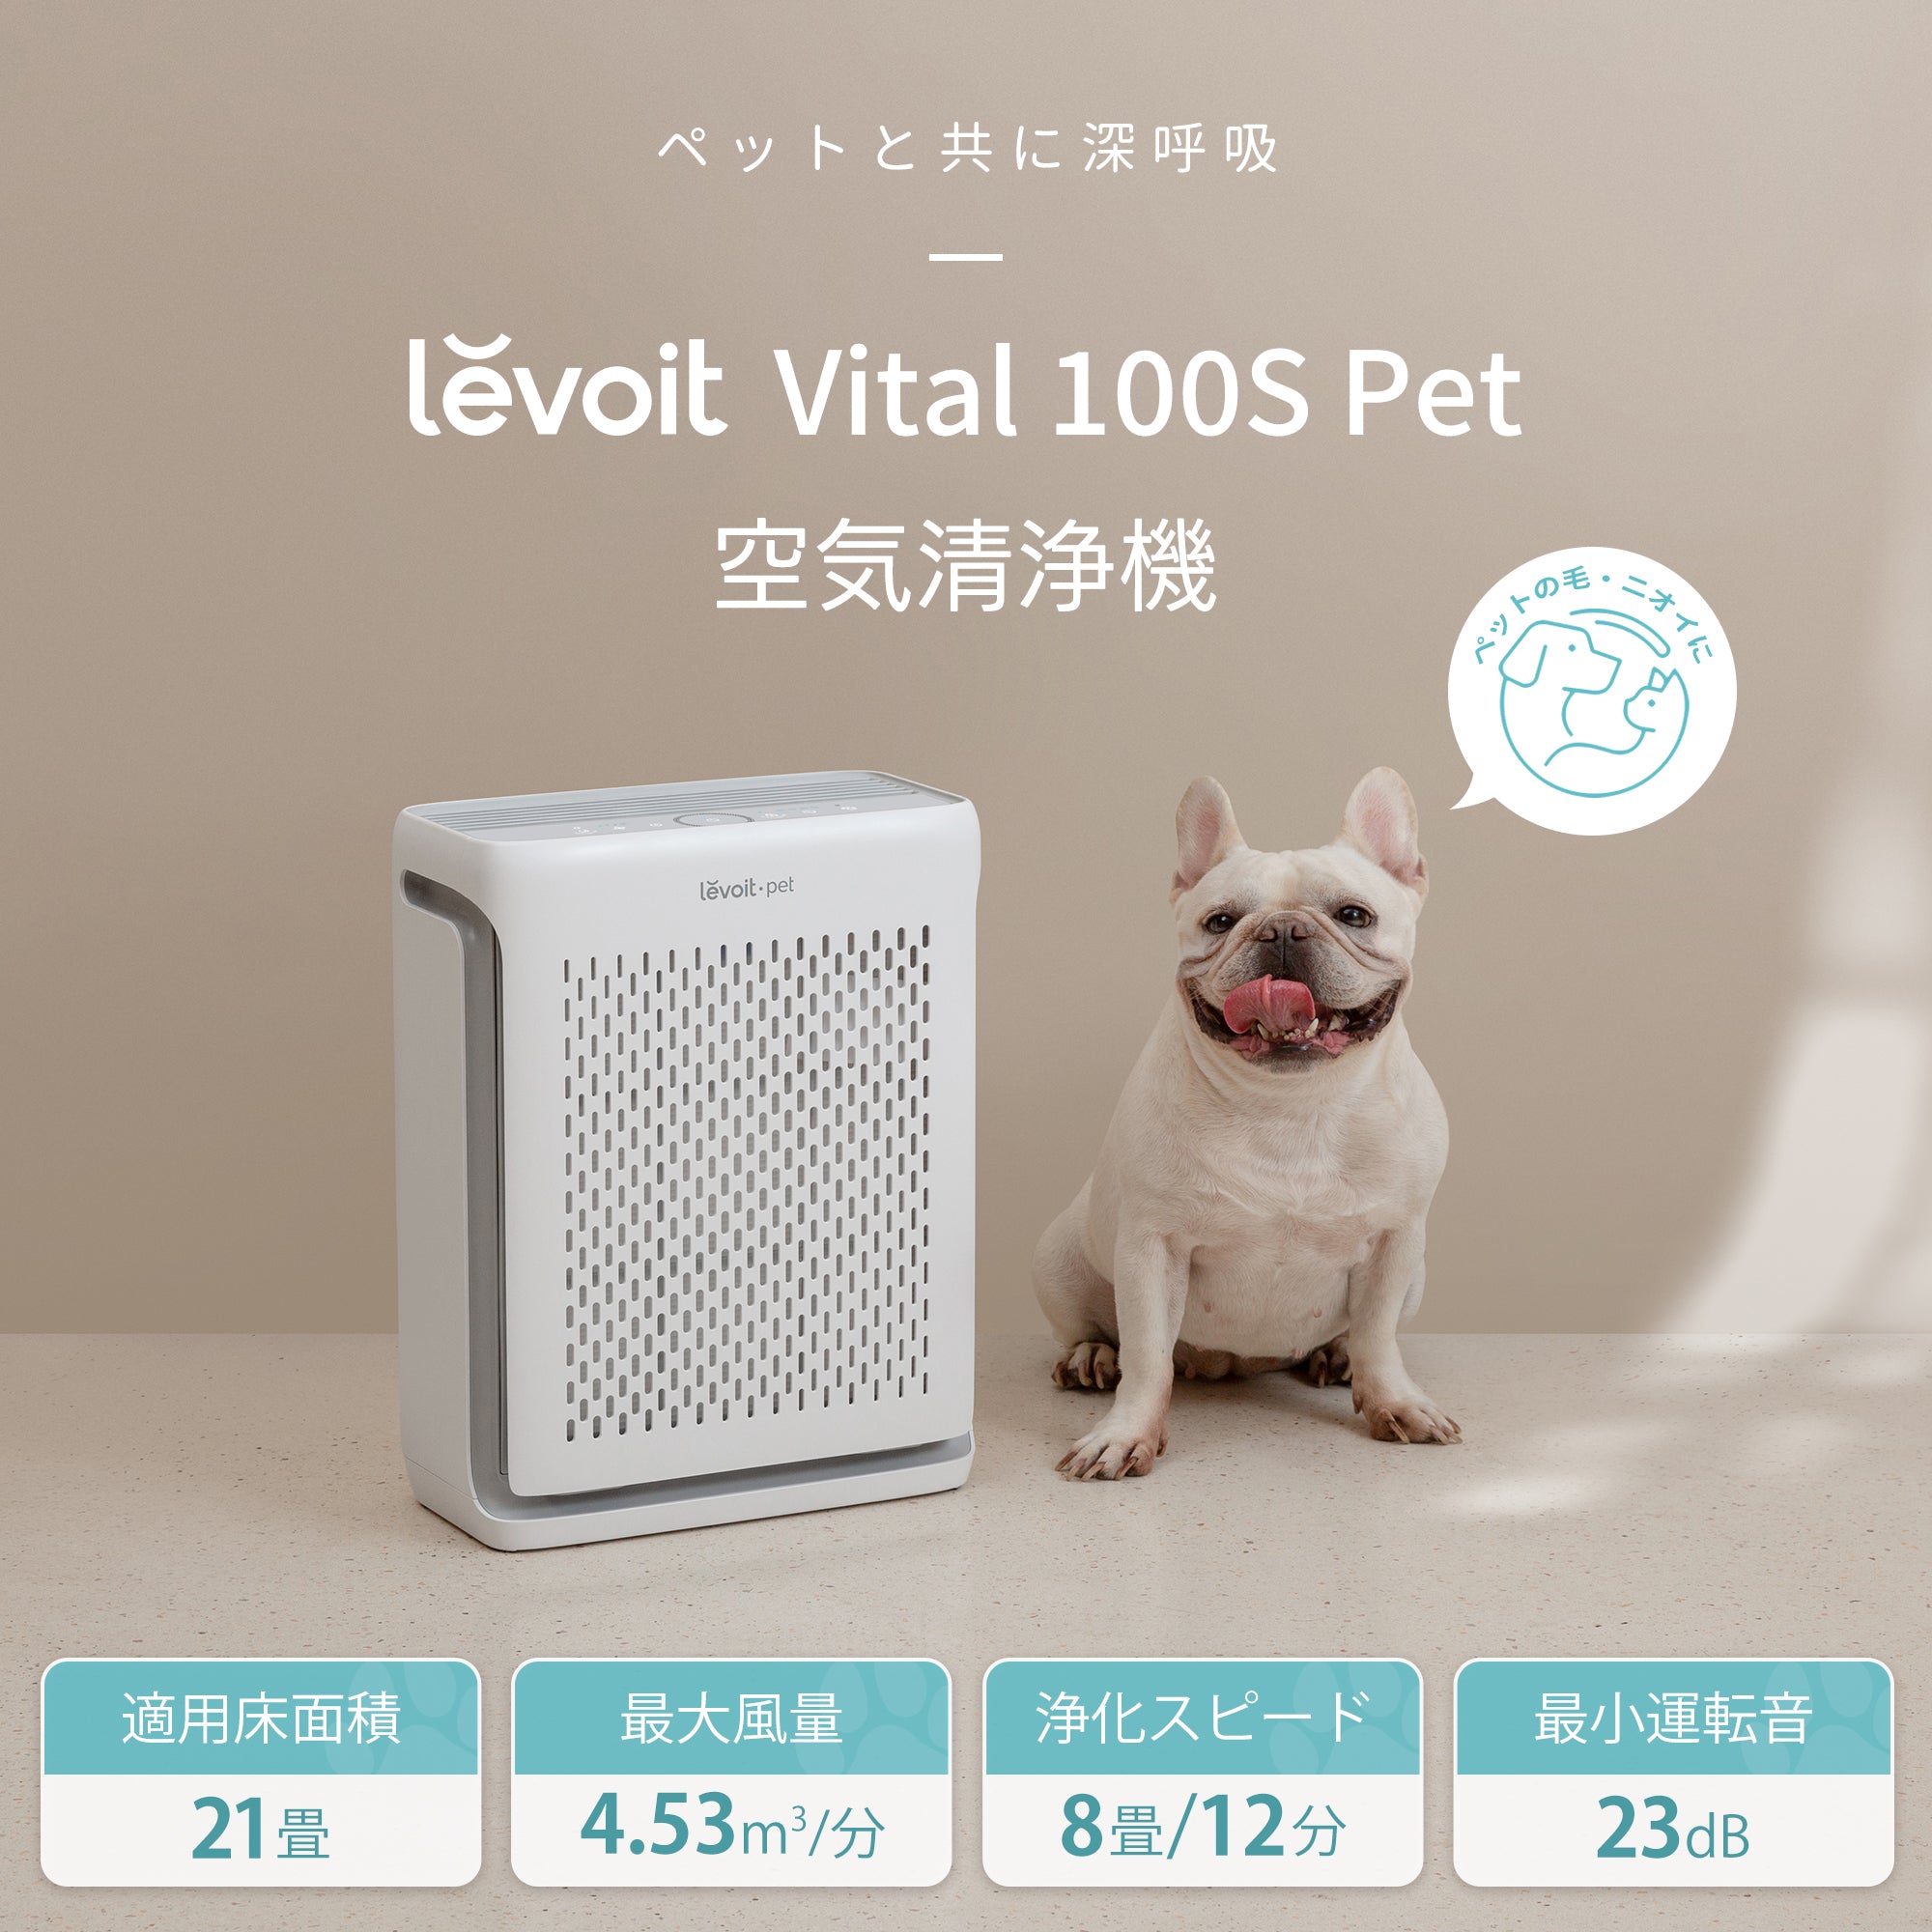 Levoit Vital 100S Pet 空気清浄機